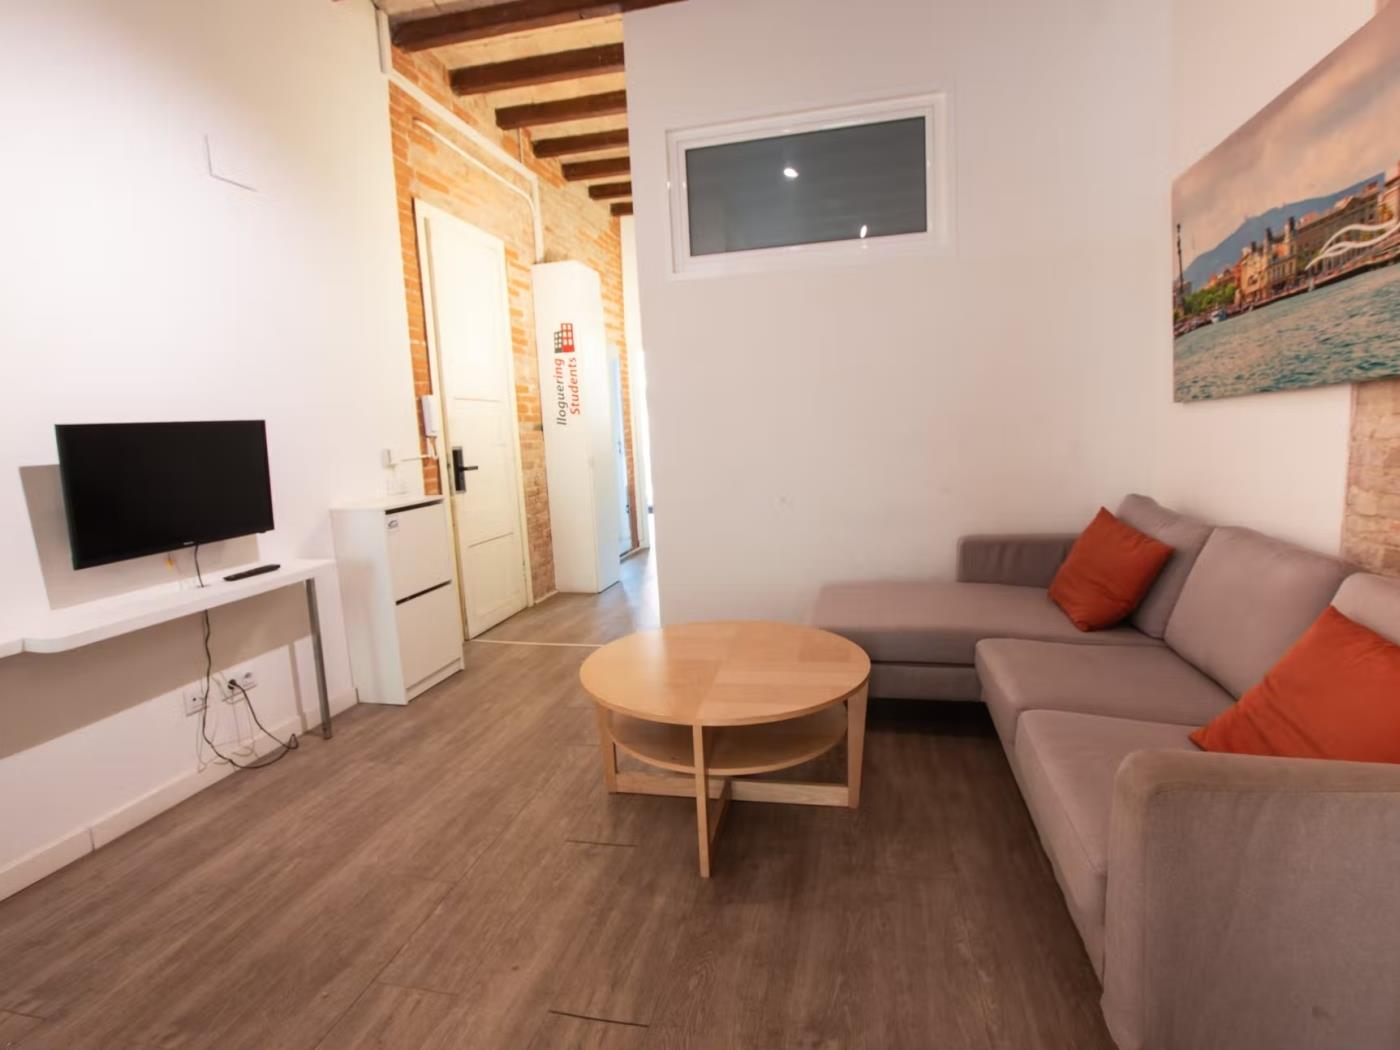 Habitación en piso compartido de 4 habitaciones en Gràcia - My Space Barcelona Apartamentos